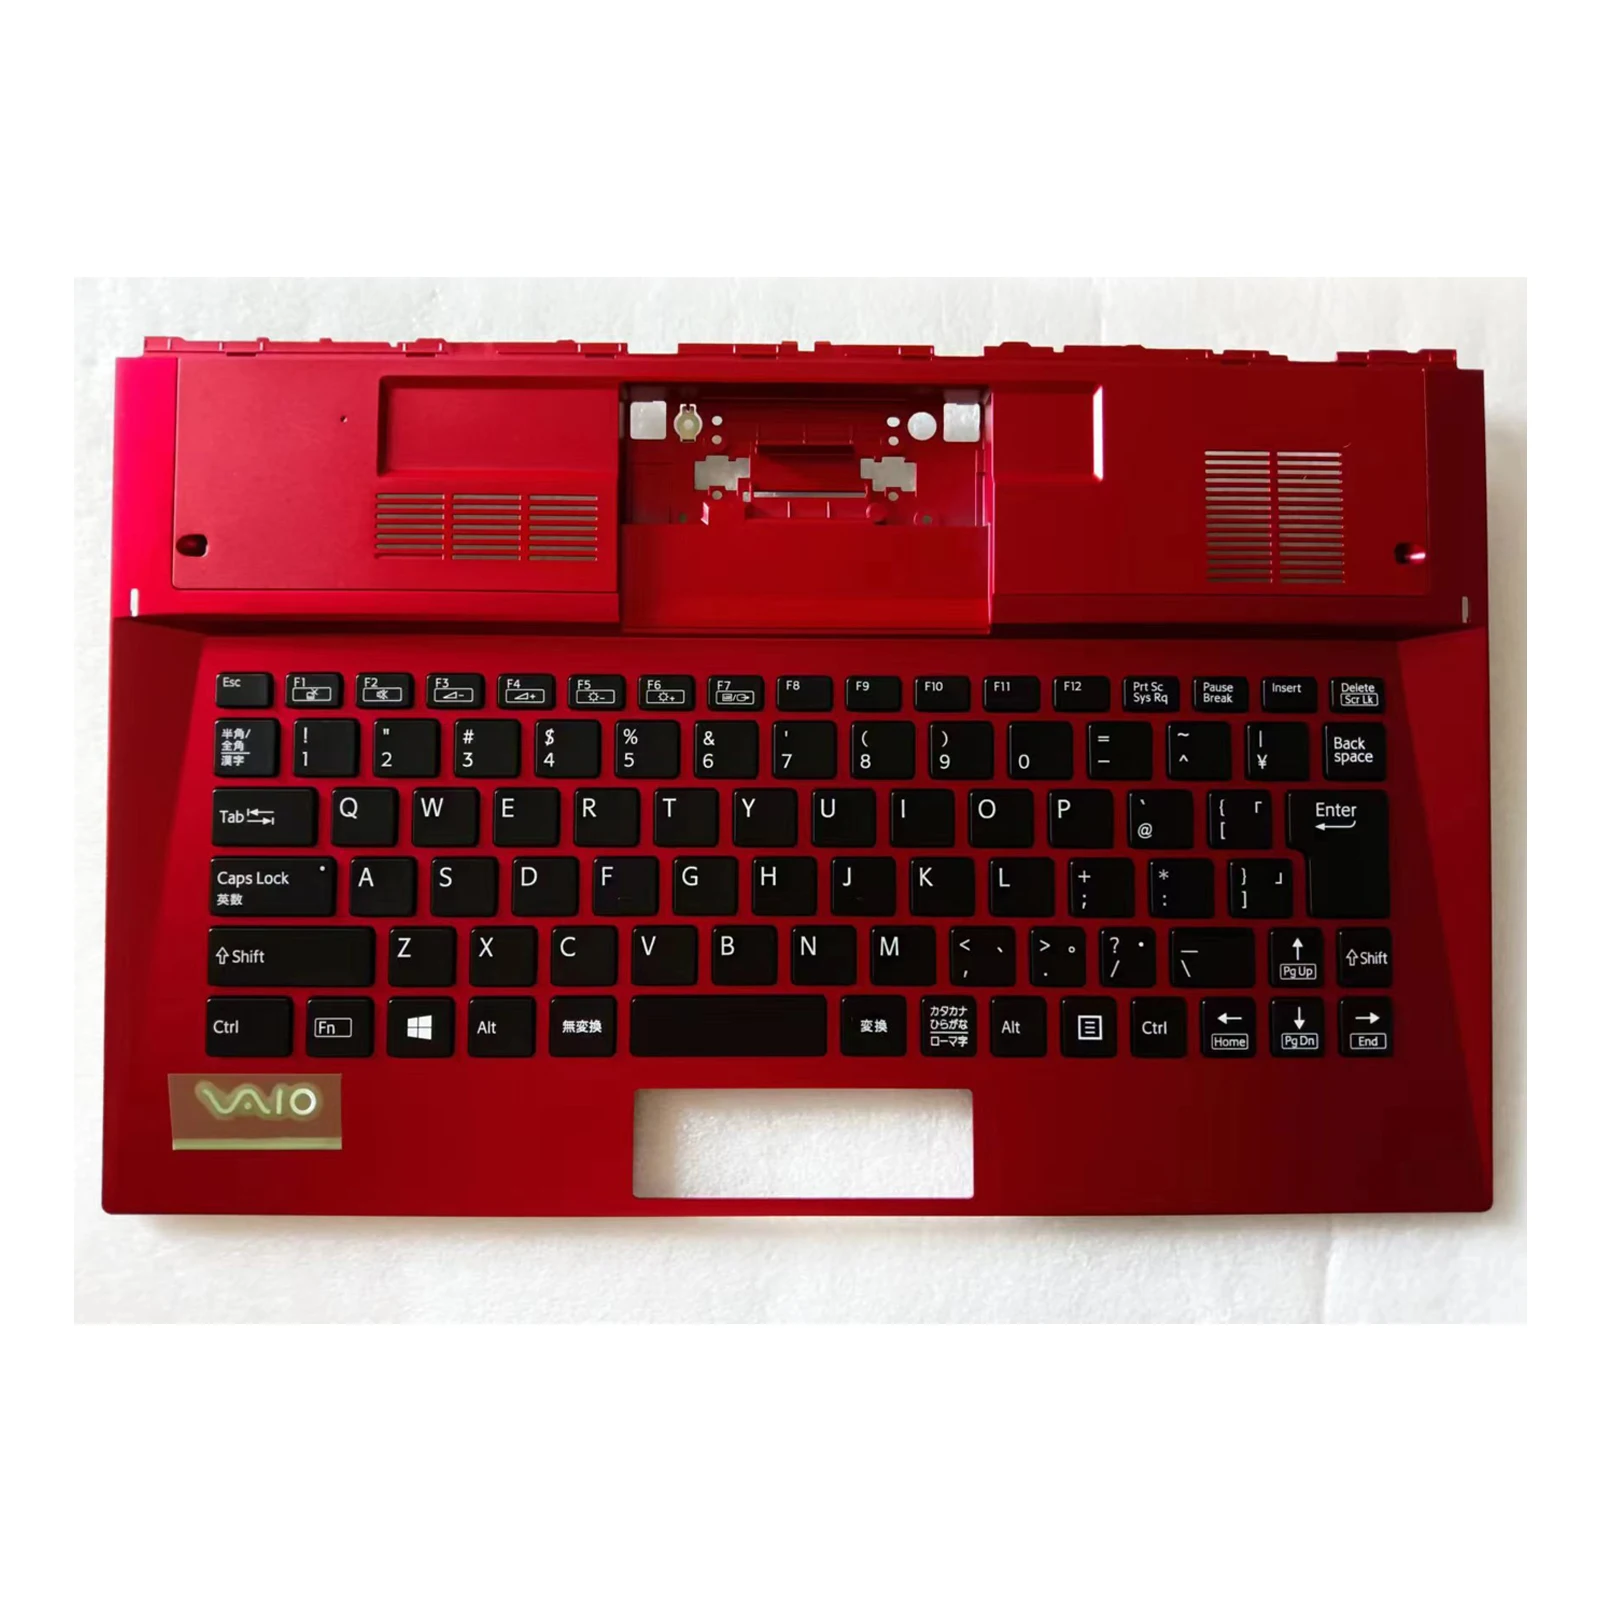 牡丹vpc-svd13の交換用キーボード、cシェル付きの赤いjpレイアウト、新しい